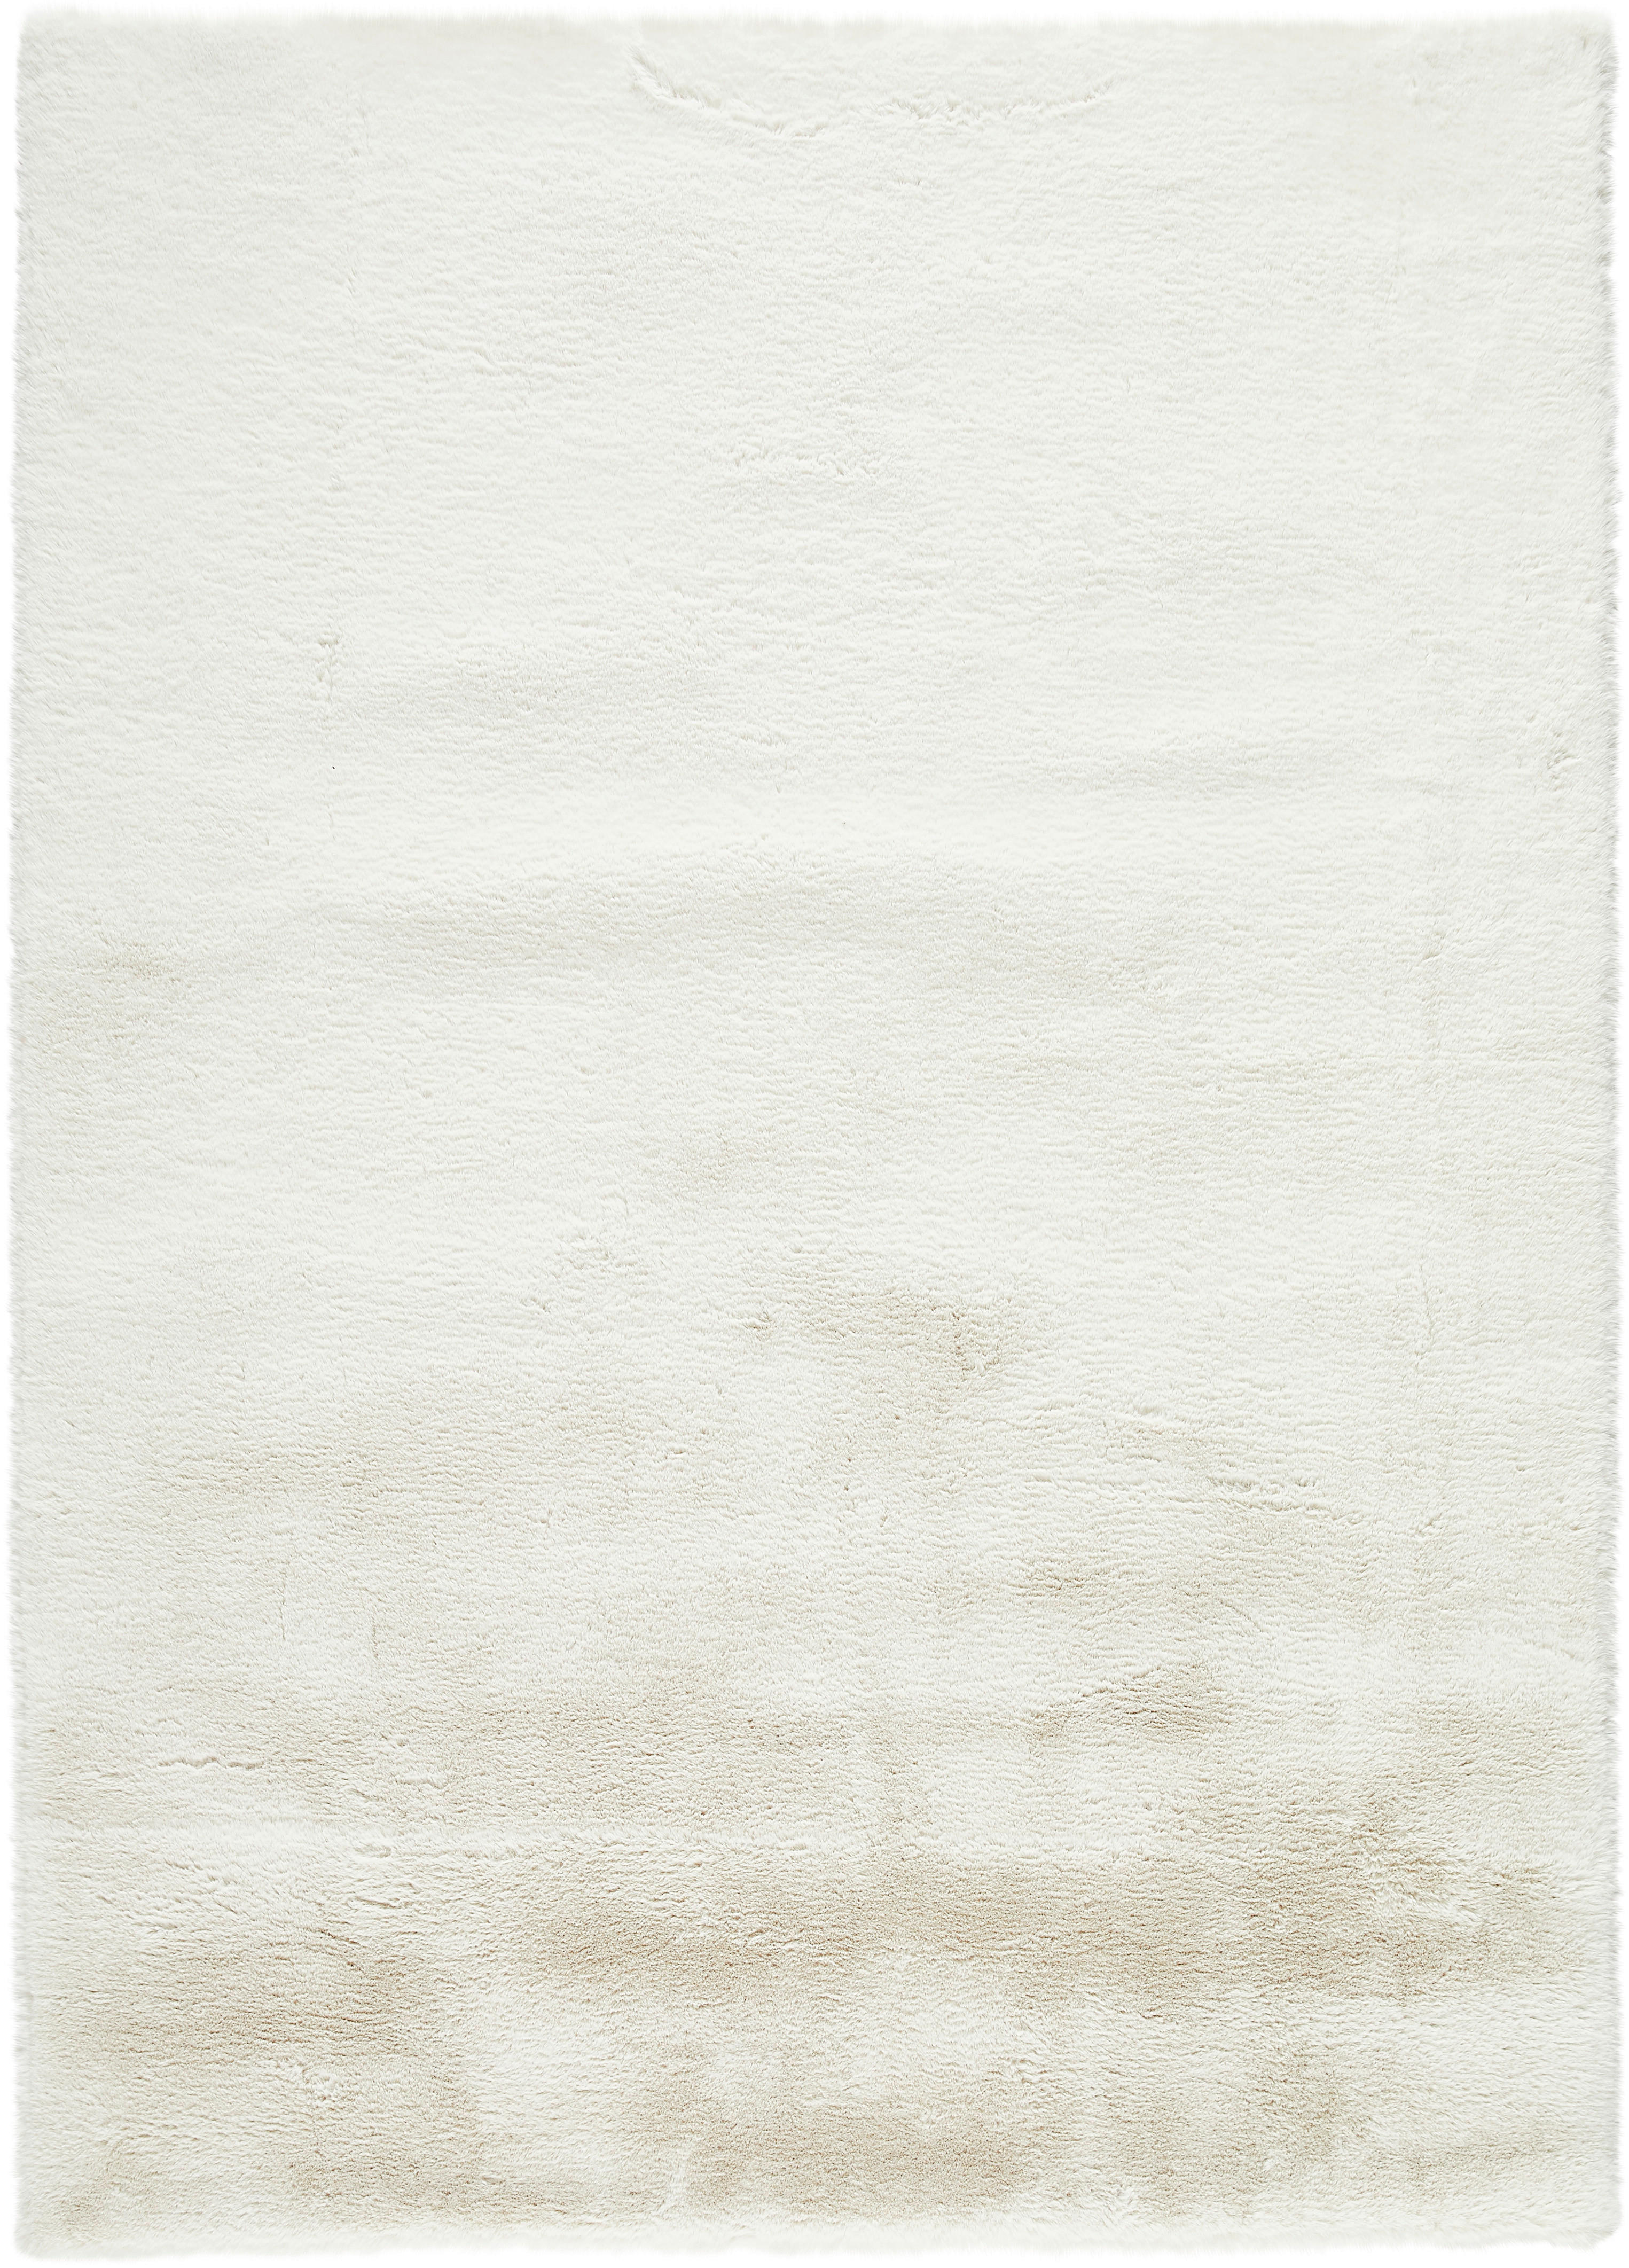 HOCHFLORTEPPICH 140/200 cm  - Weiß, Design, Textil (140/200cm) - Novel